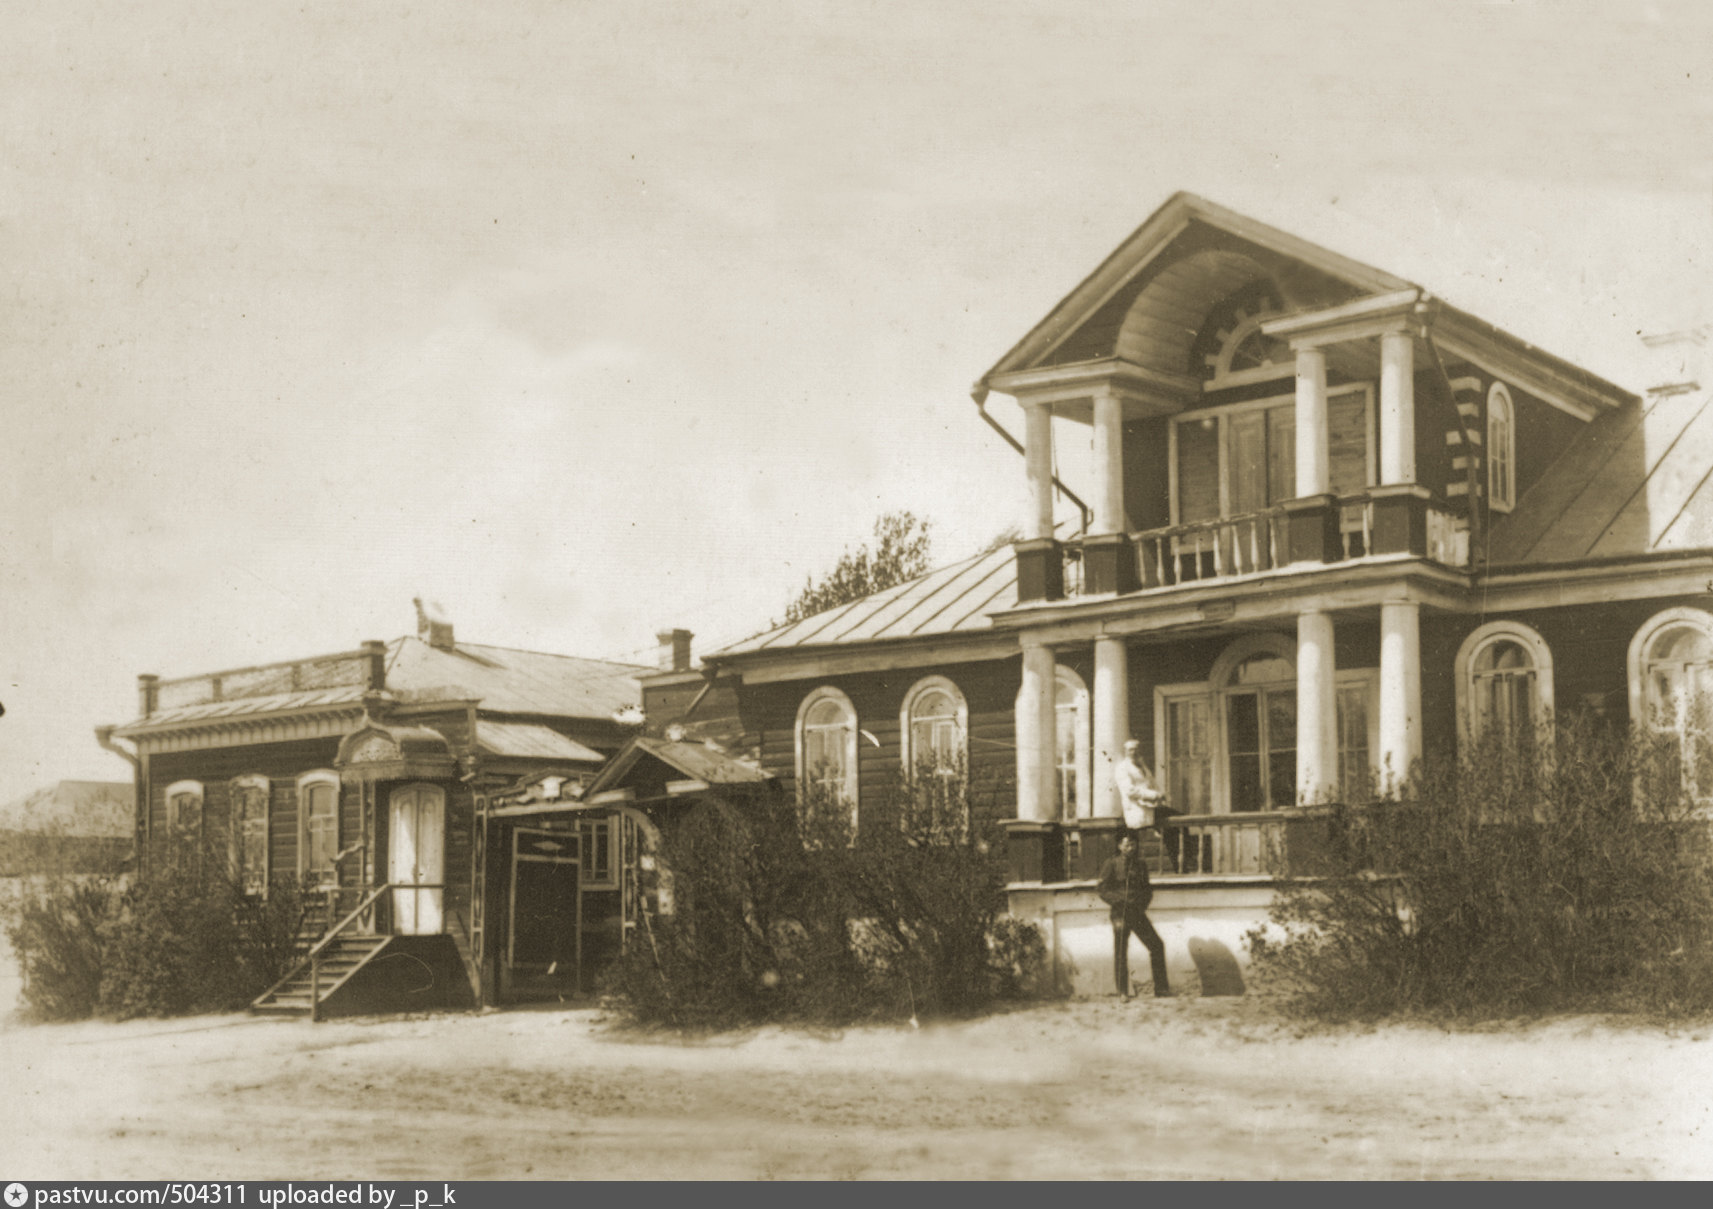 купеческие дома 19 века фото